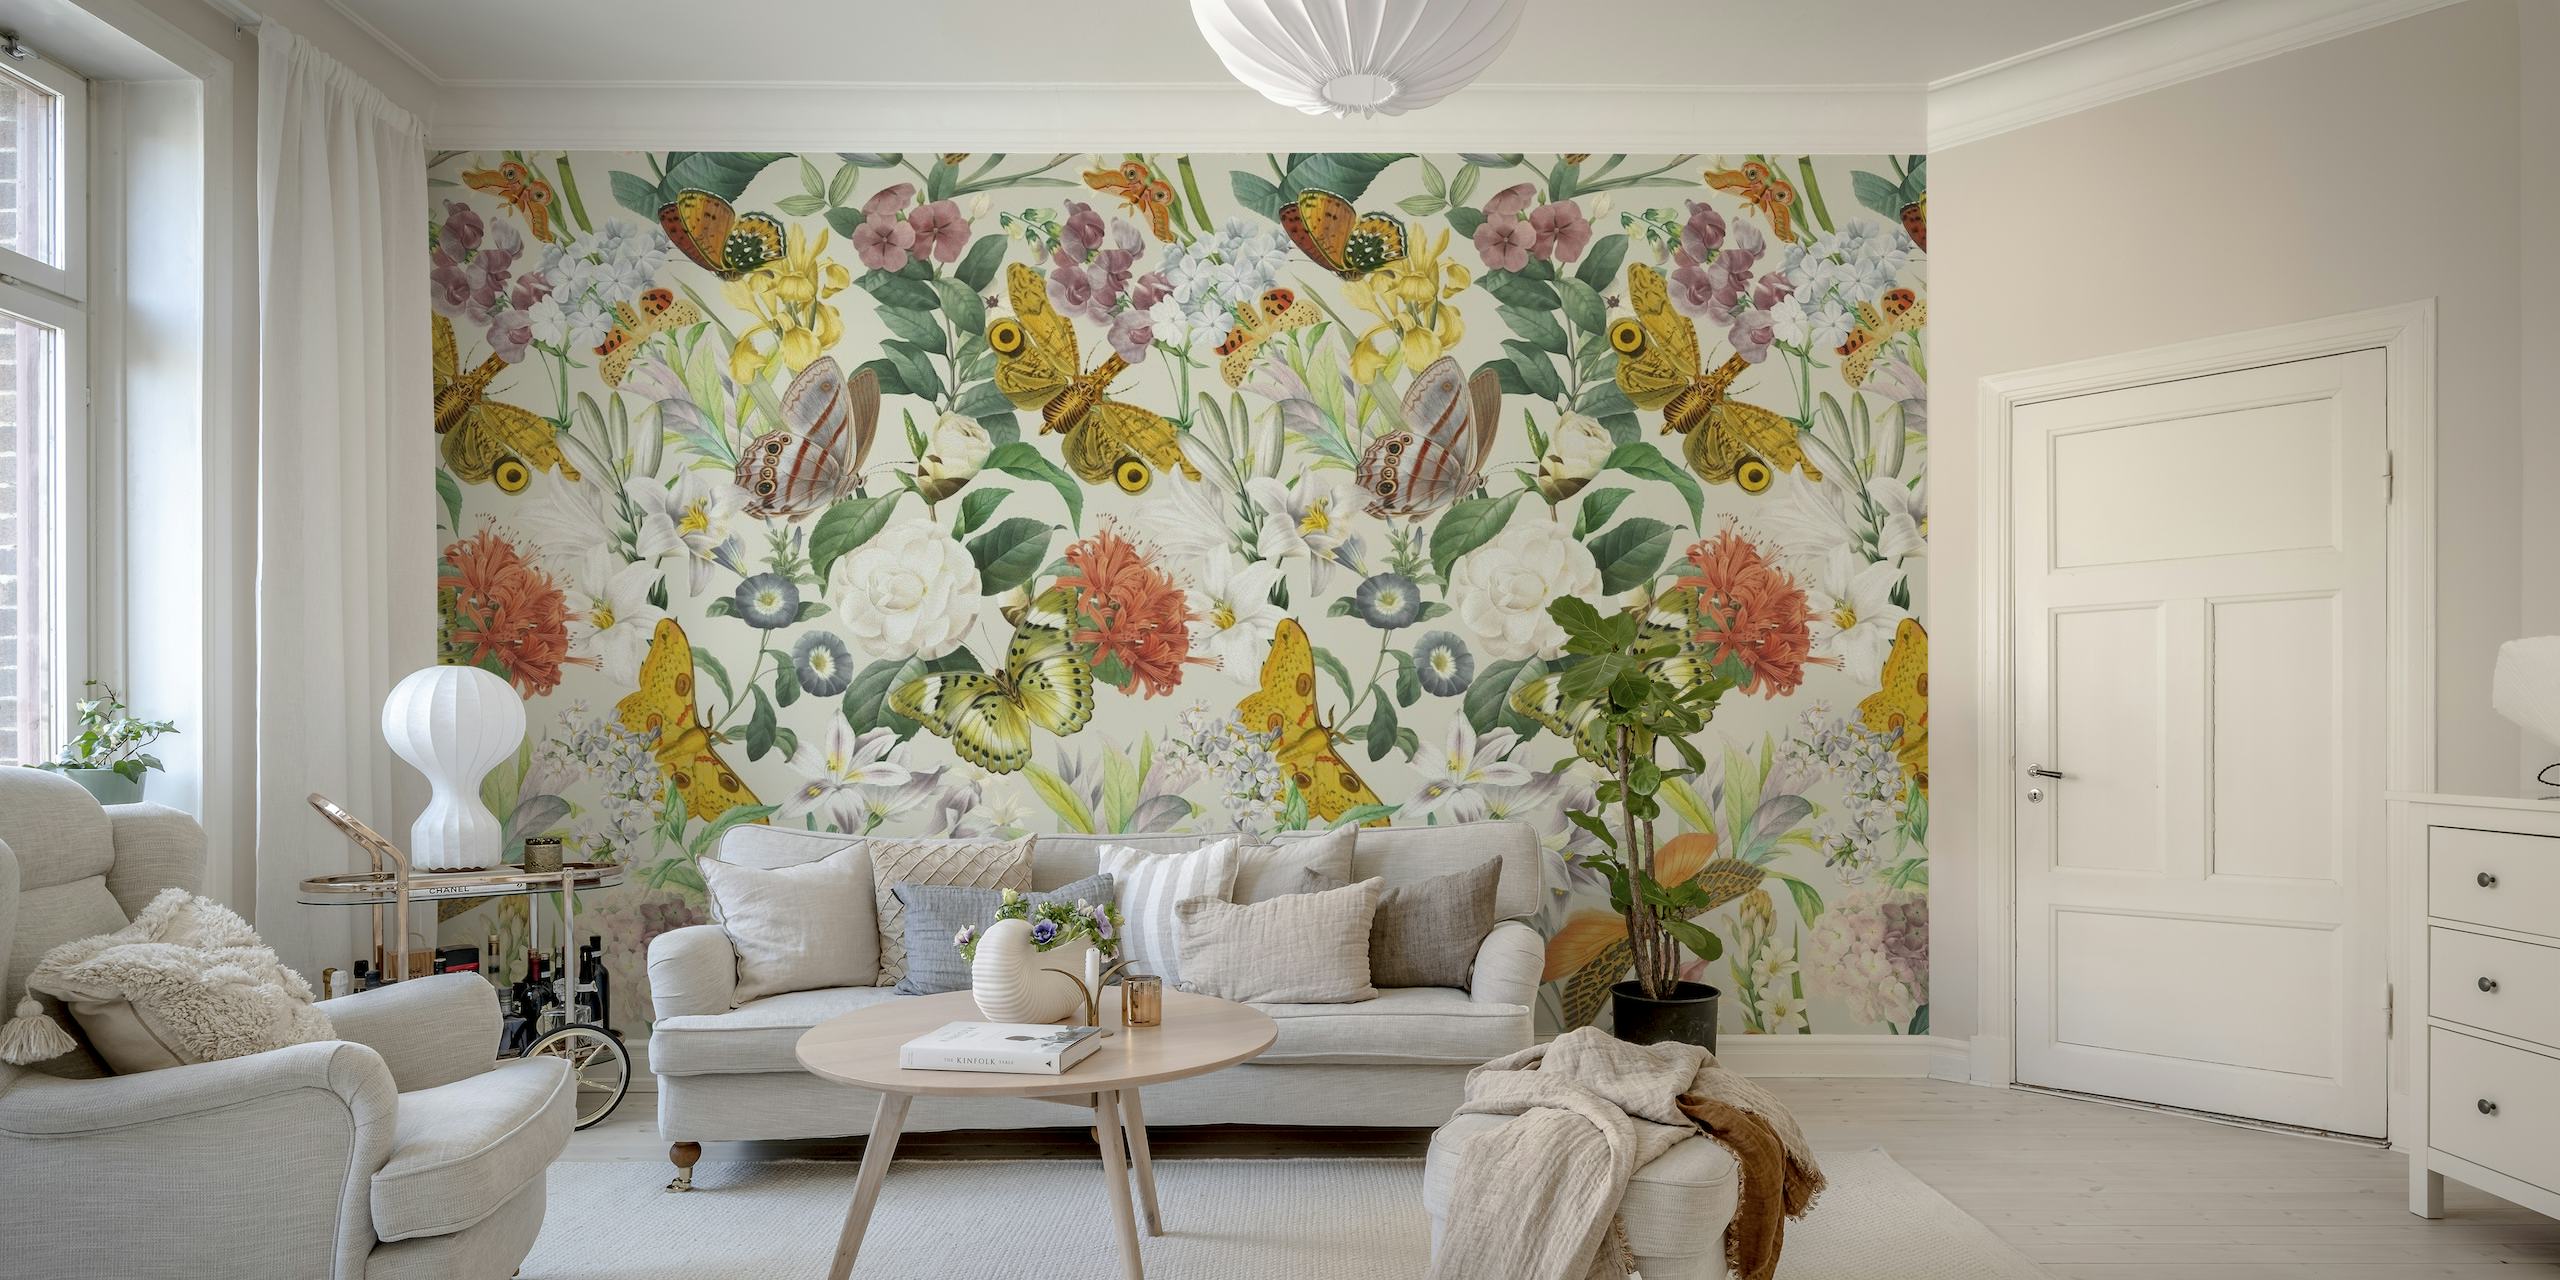 Een fotobehang met een prachtig patroon van motten, vlinders en bloemelementen in zachte pastelkleuren.